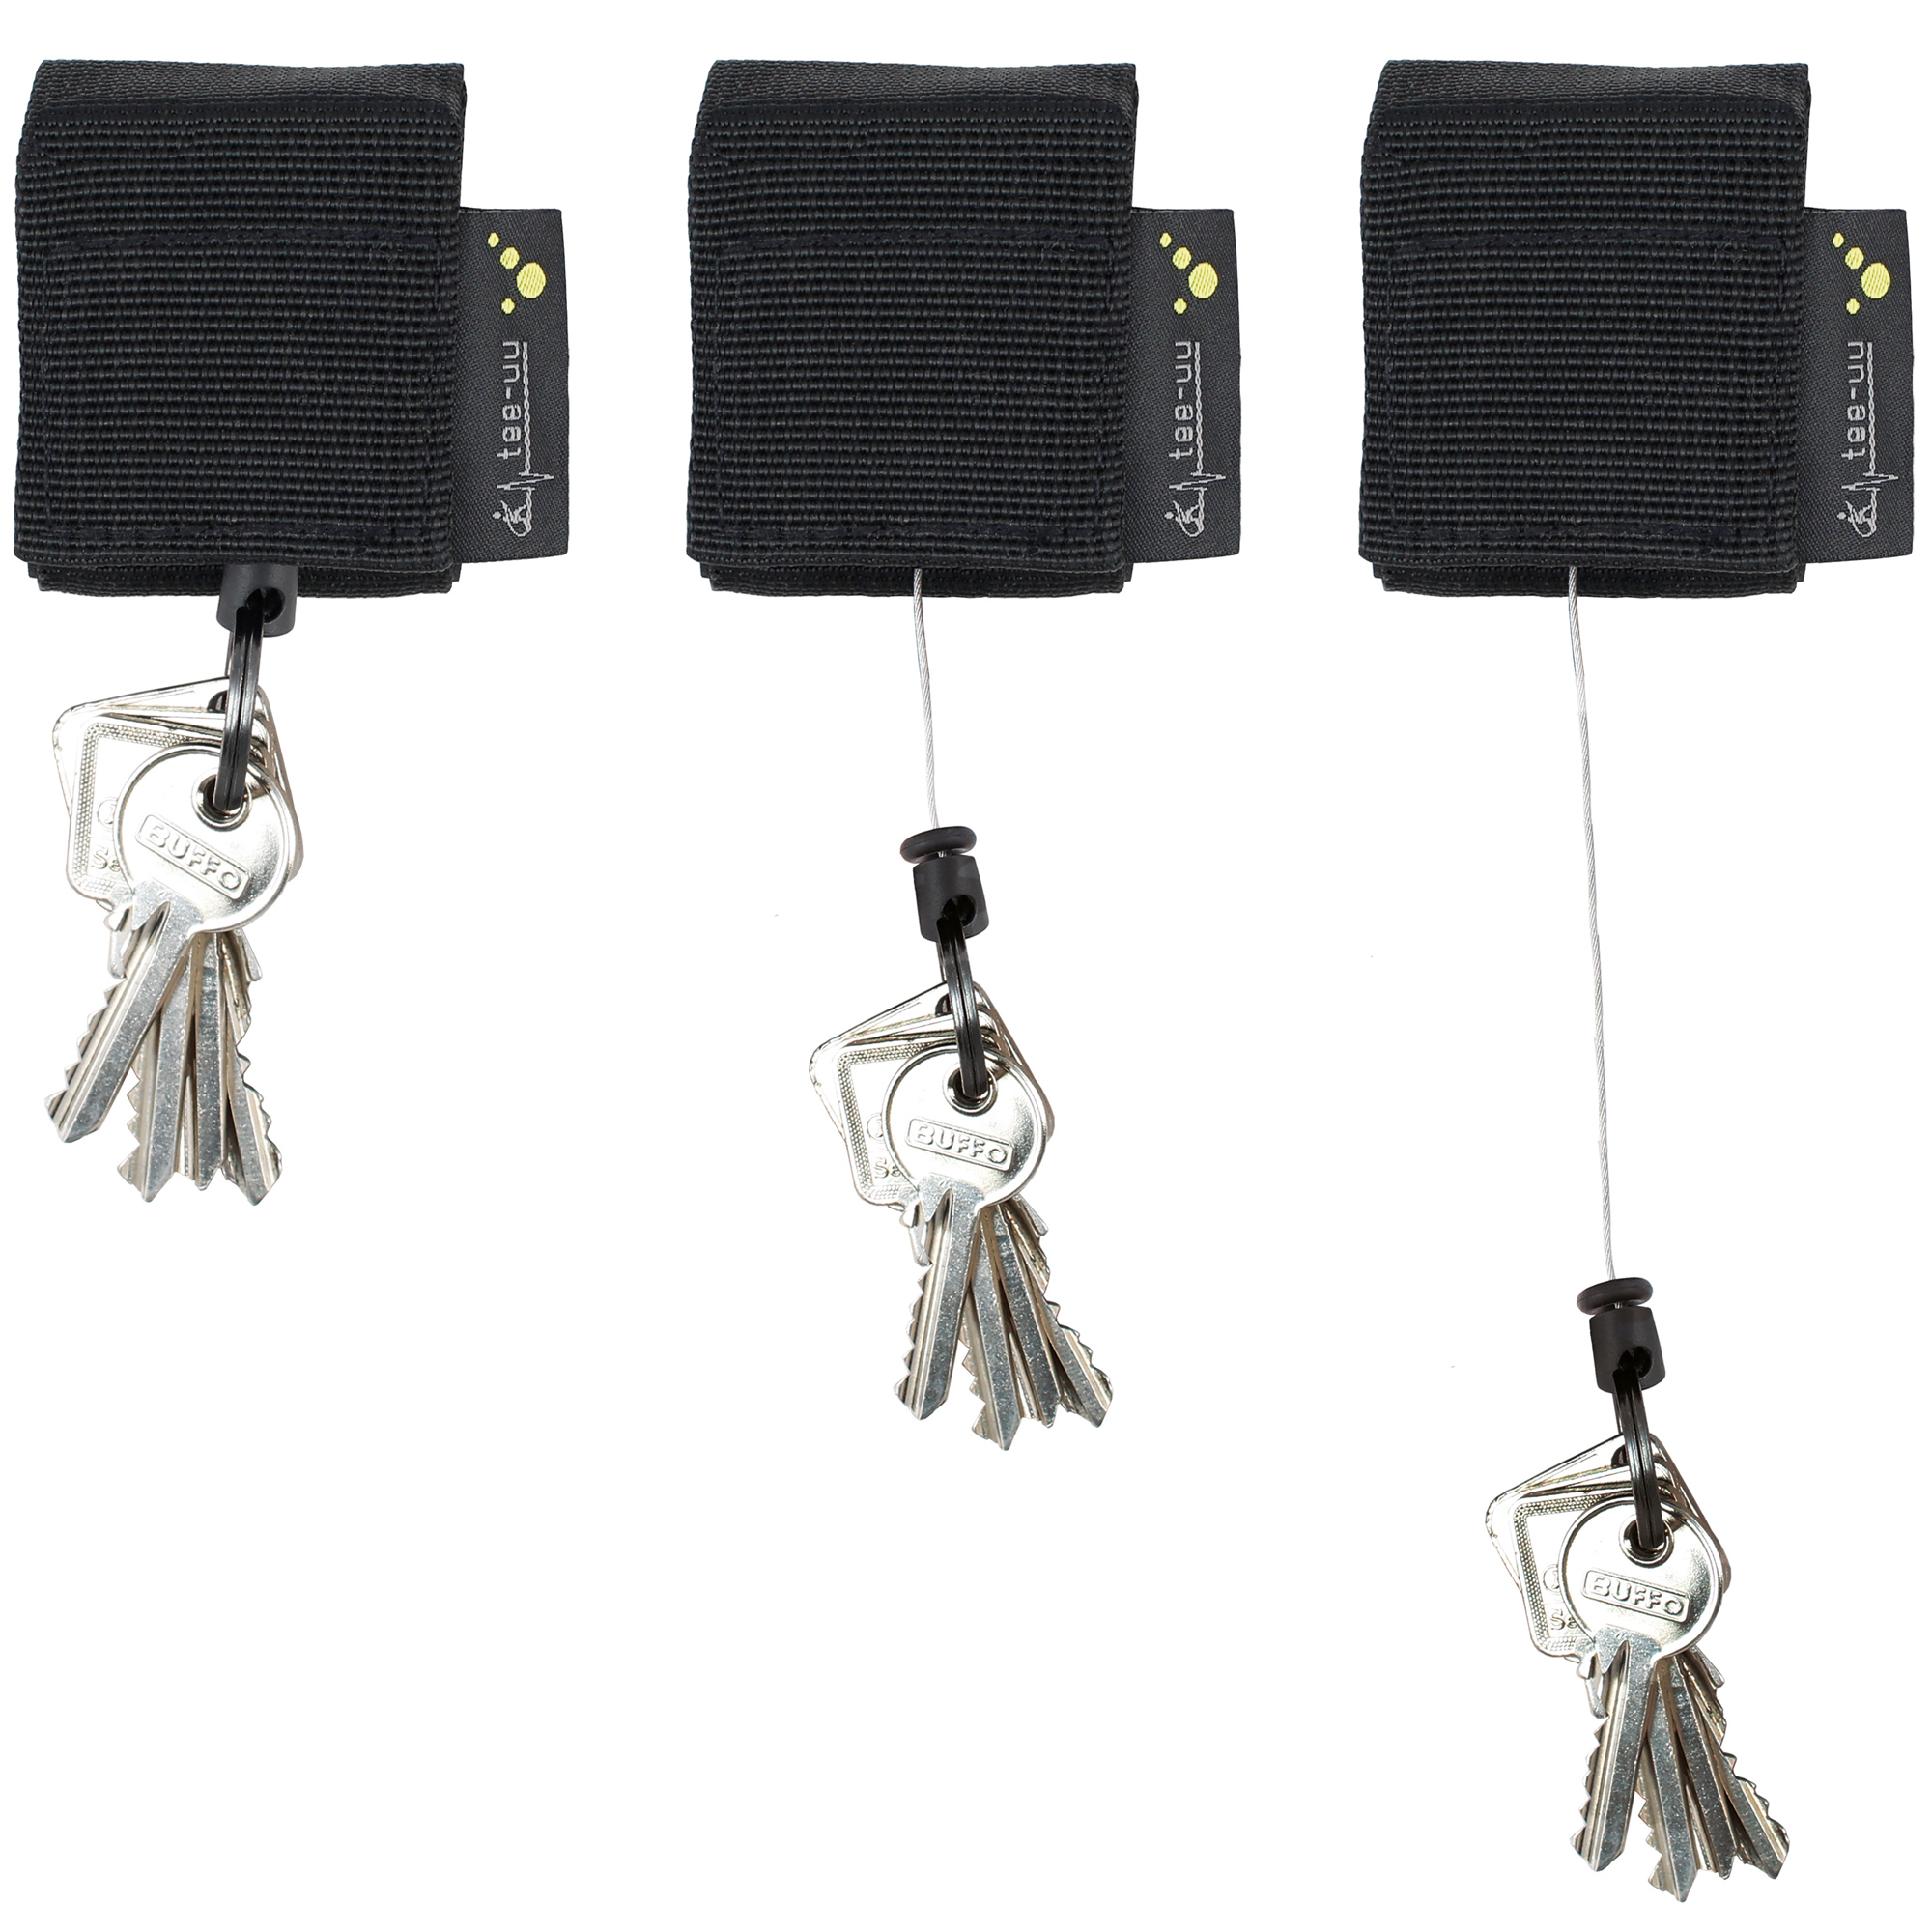 tee-uu REWIND Schlüsselhalter - Selbstaufrollender Schlüsselhalter mit sicherem Stahlseil für Deine TEE-UU Koppel. 5 x 6,5 x 3,5 cm. Für Koppel QUICK und BLACK.